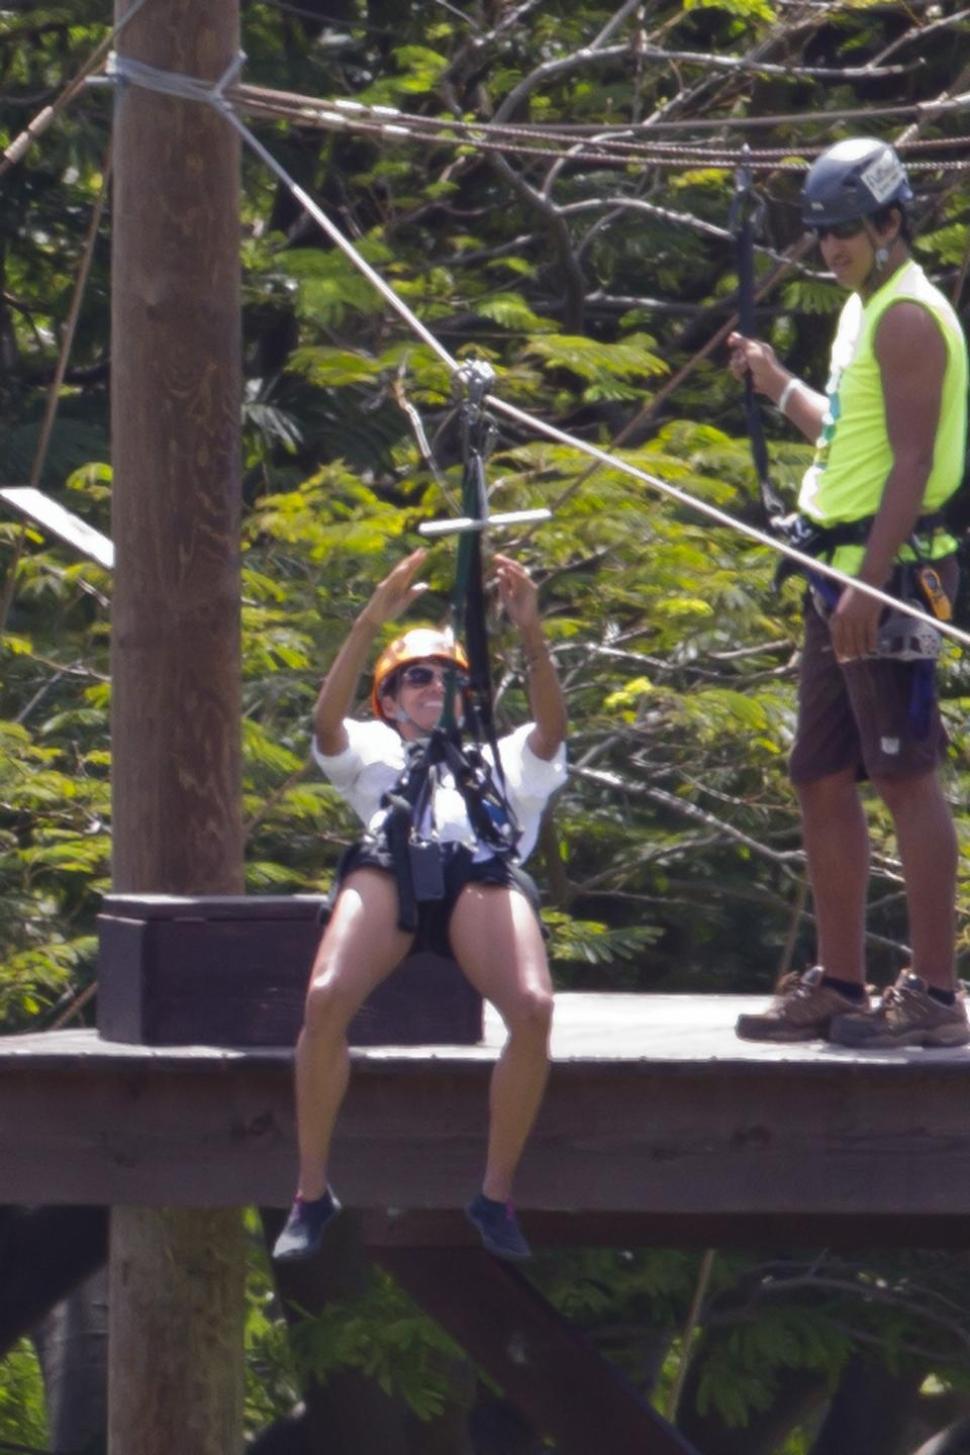 Halle Berry defies gravity zip-lining in Hawaii.